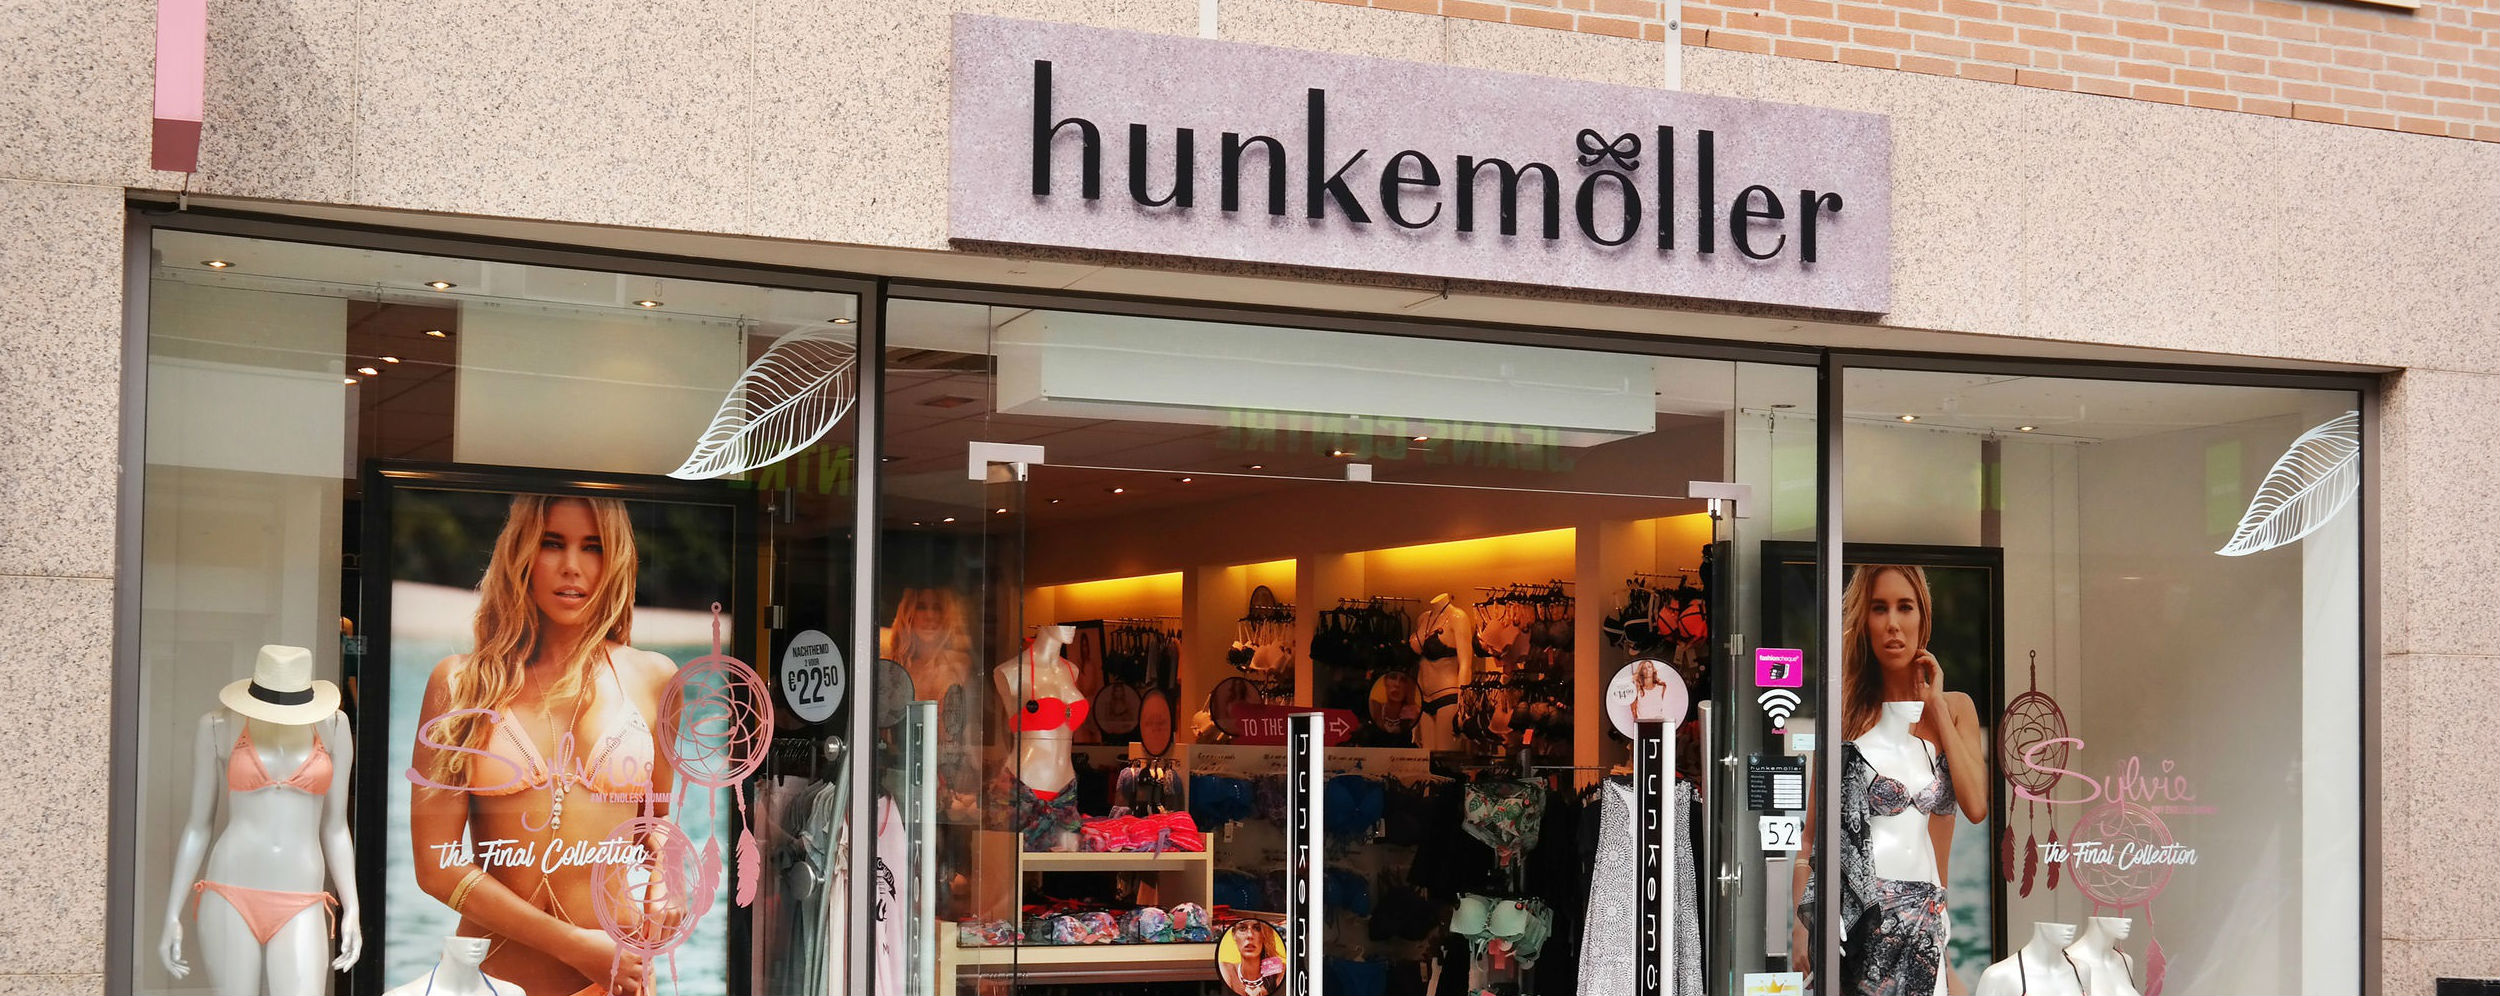 Omnichannel en marketing mooi setje bij Hunkemöller